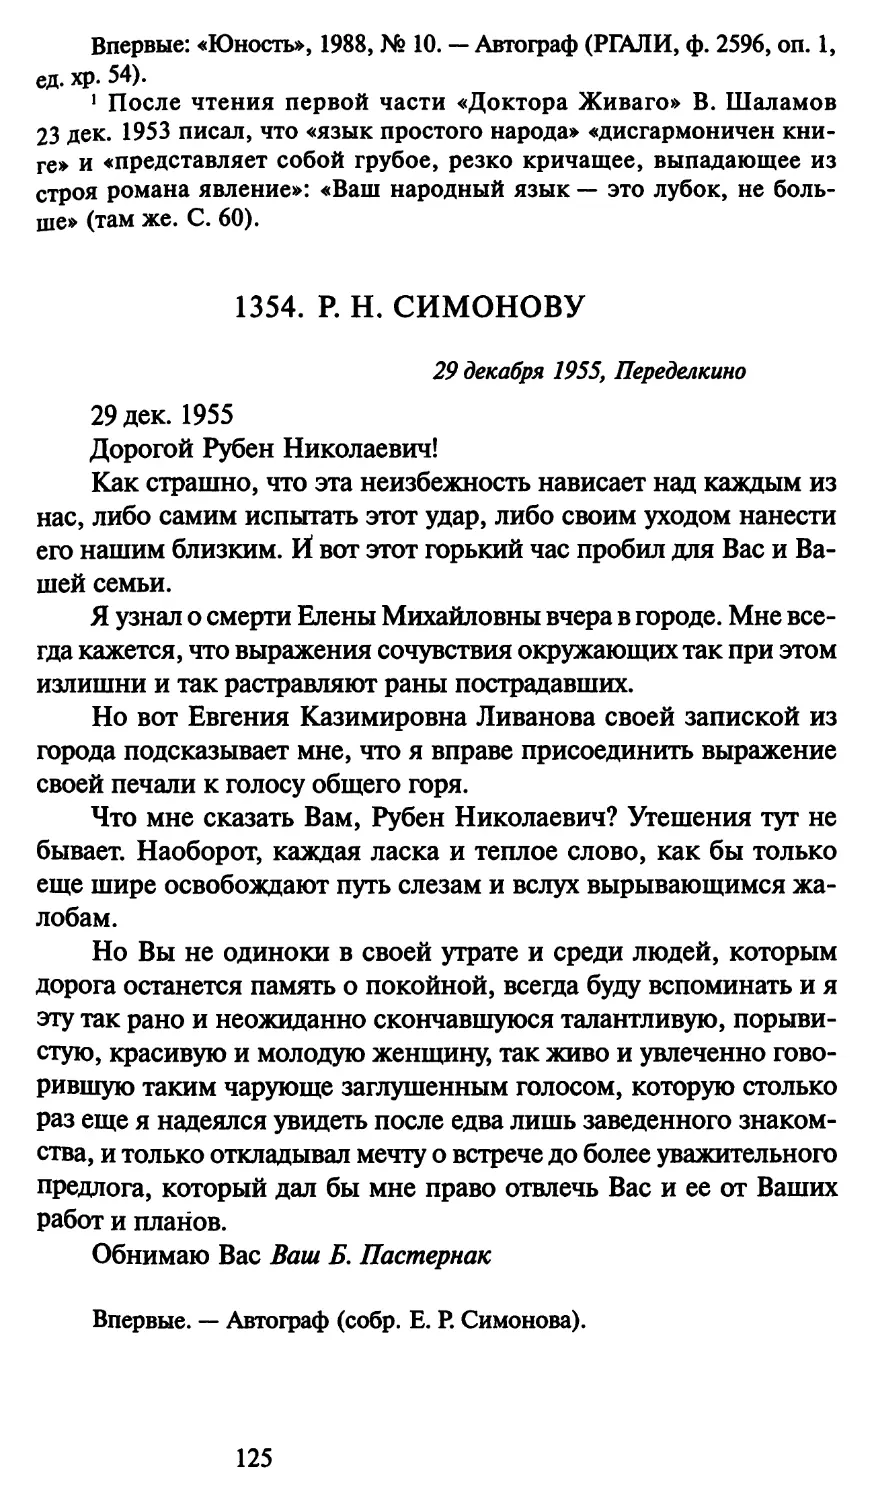 1354. Р. Н. Симонову 29 декабря 1955